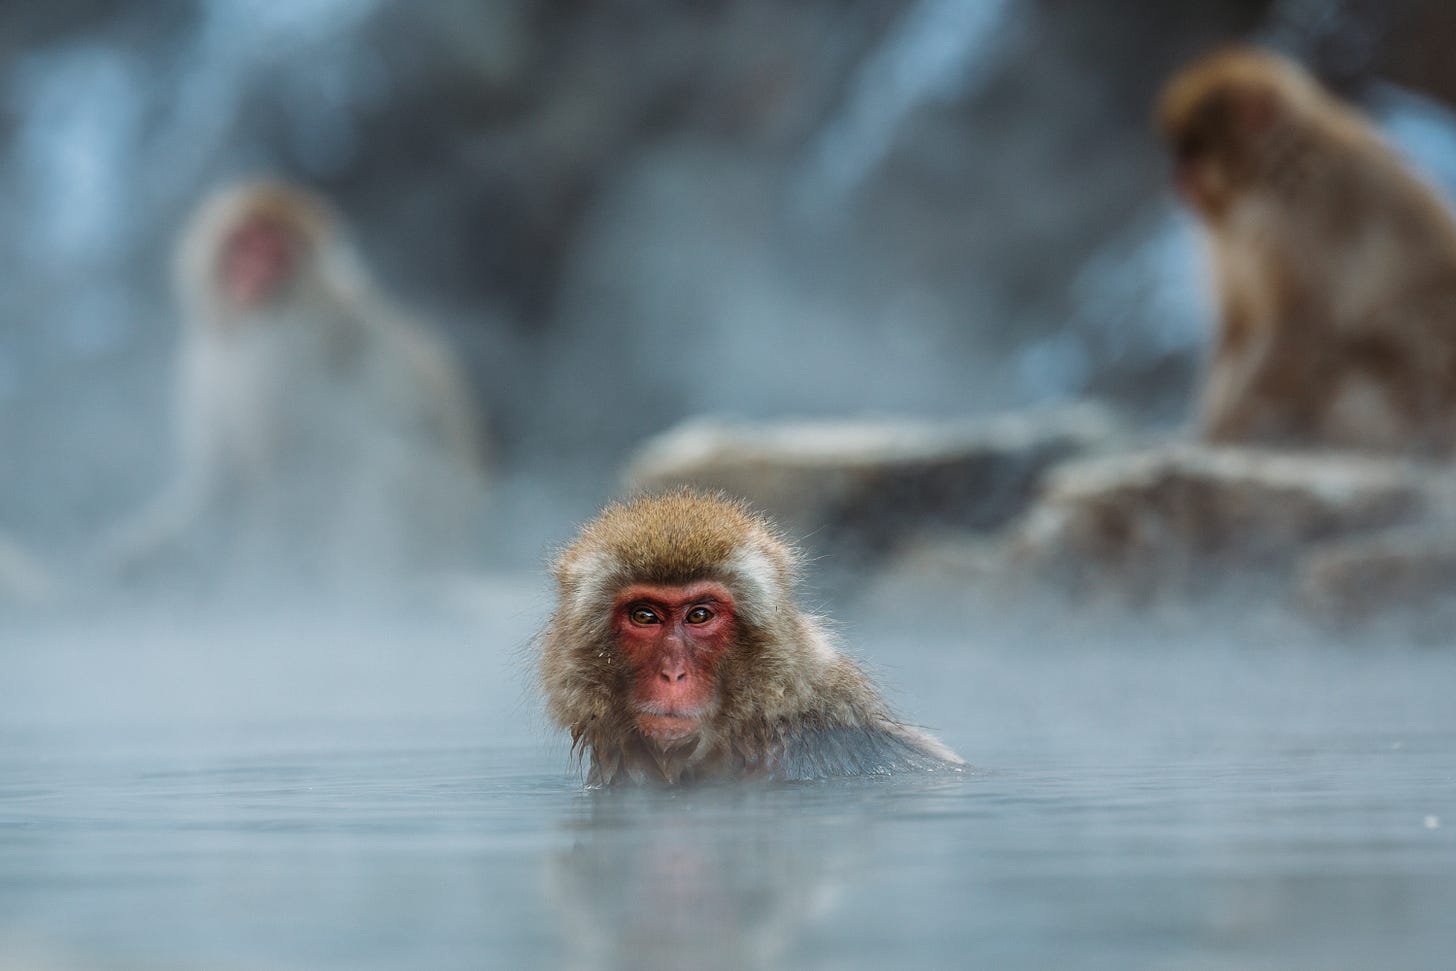 Rhesus macaque monkey in water